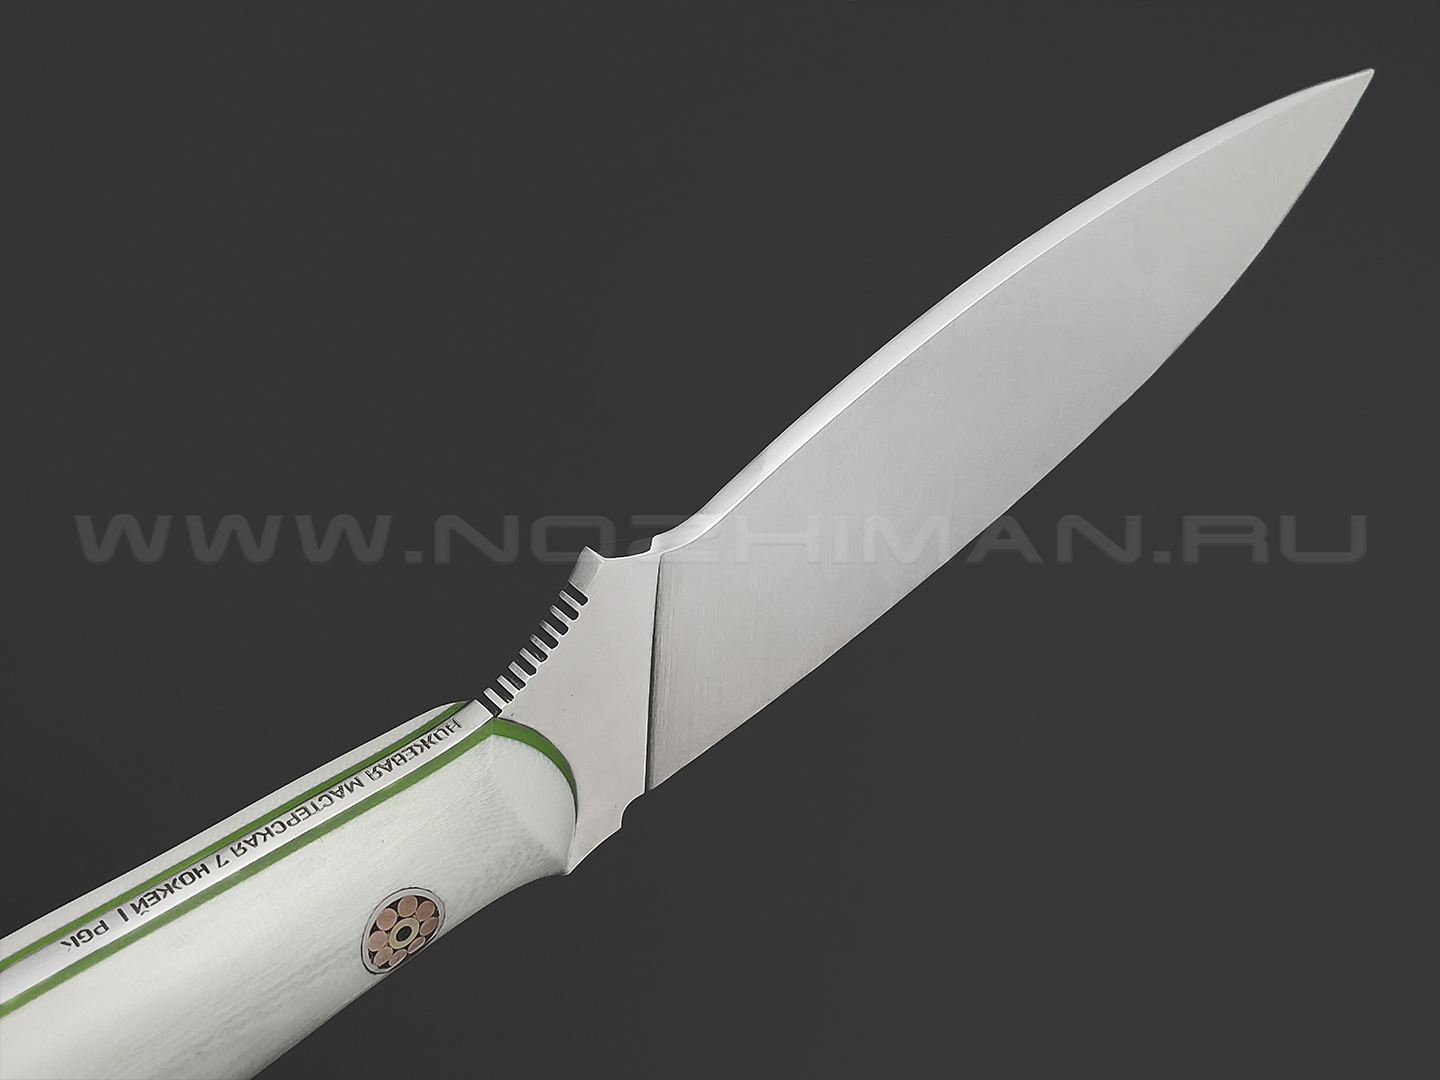 7 ножей нож Канадец сталь PGK satin, рукоять G10 white & green